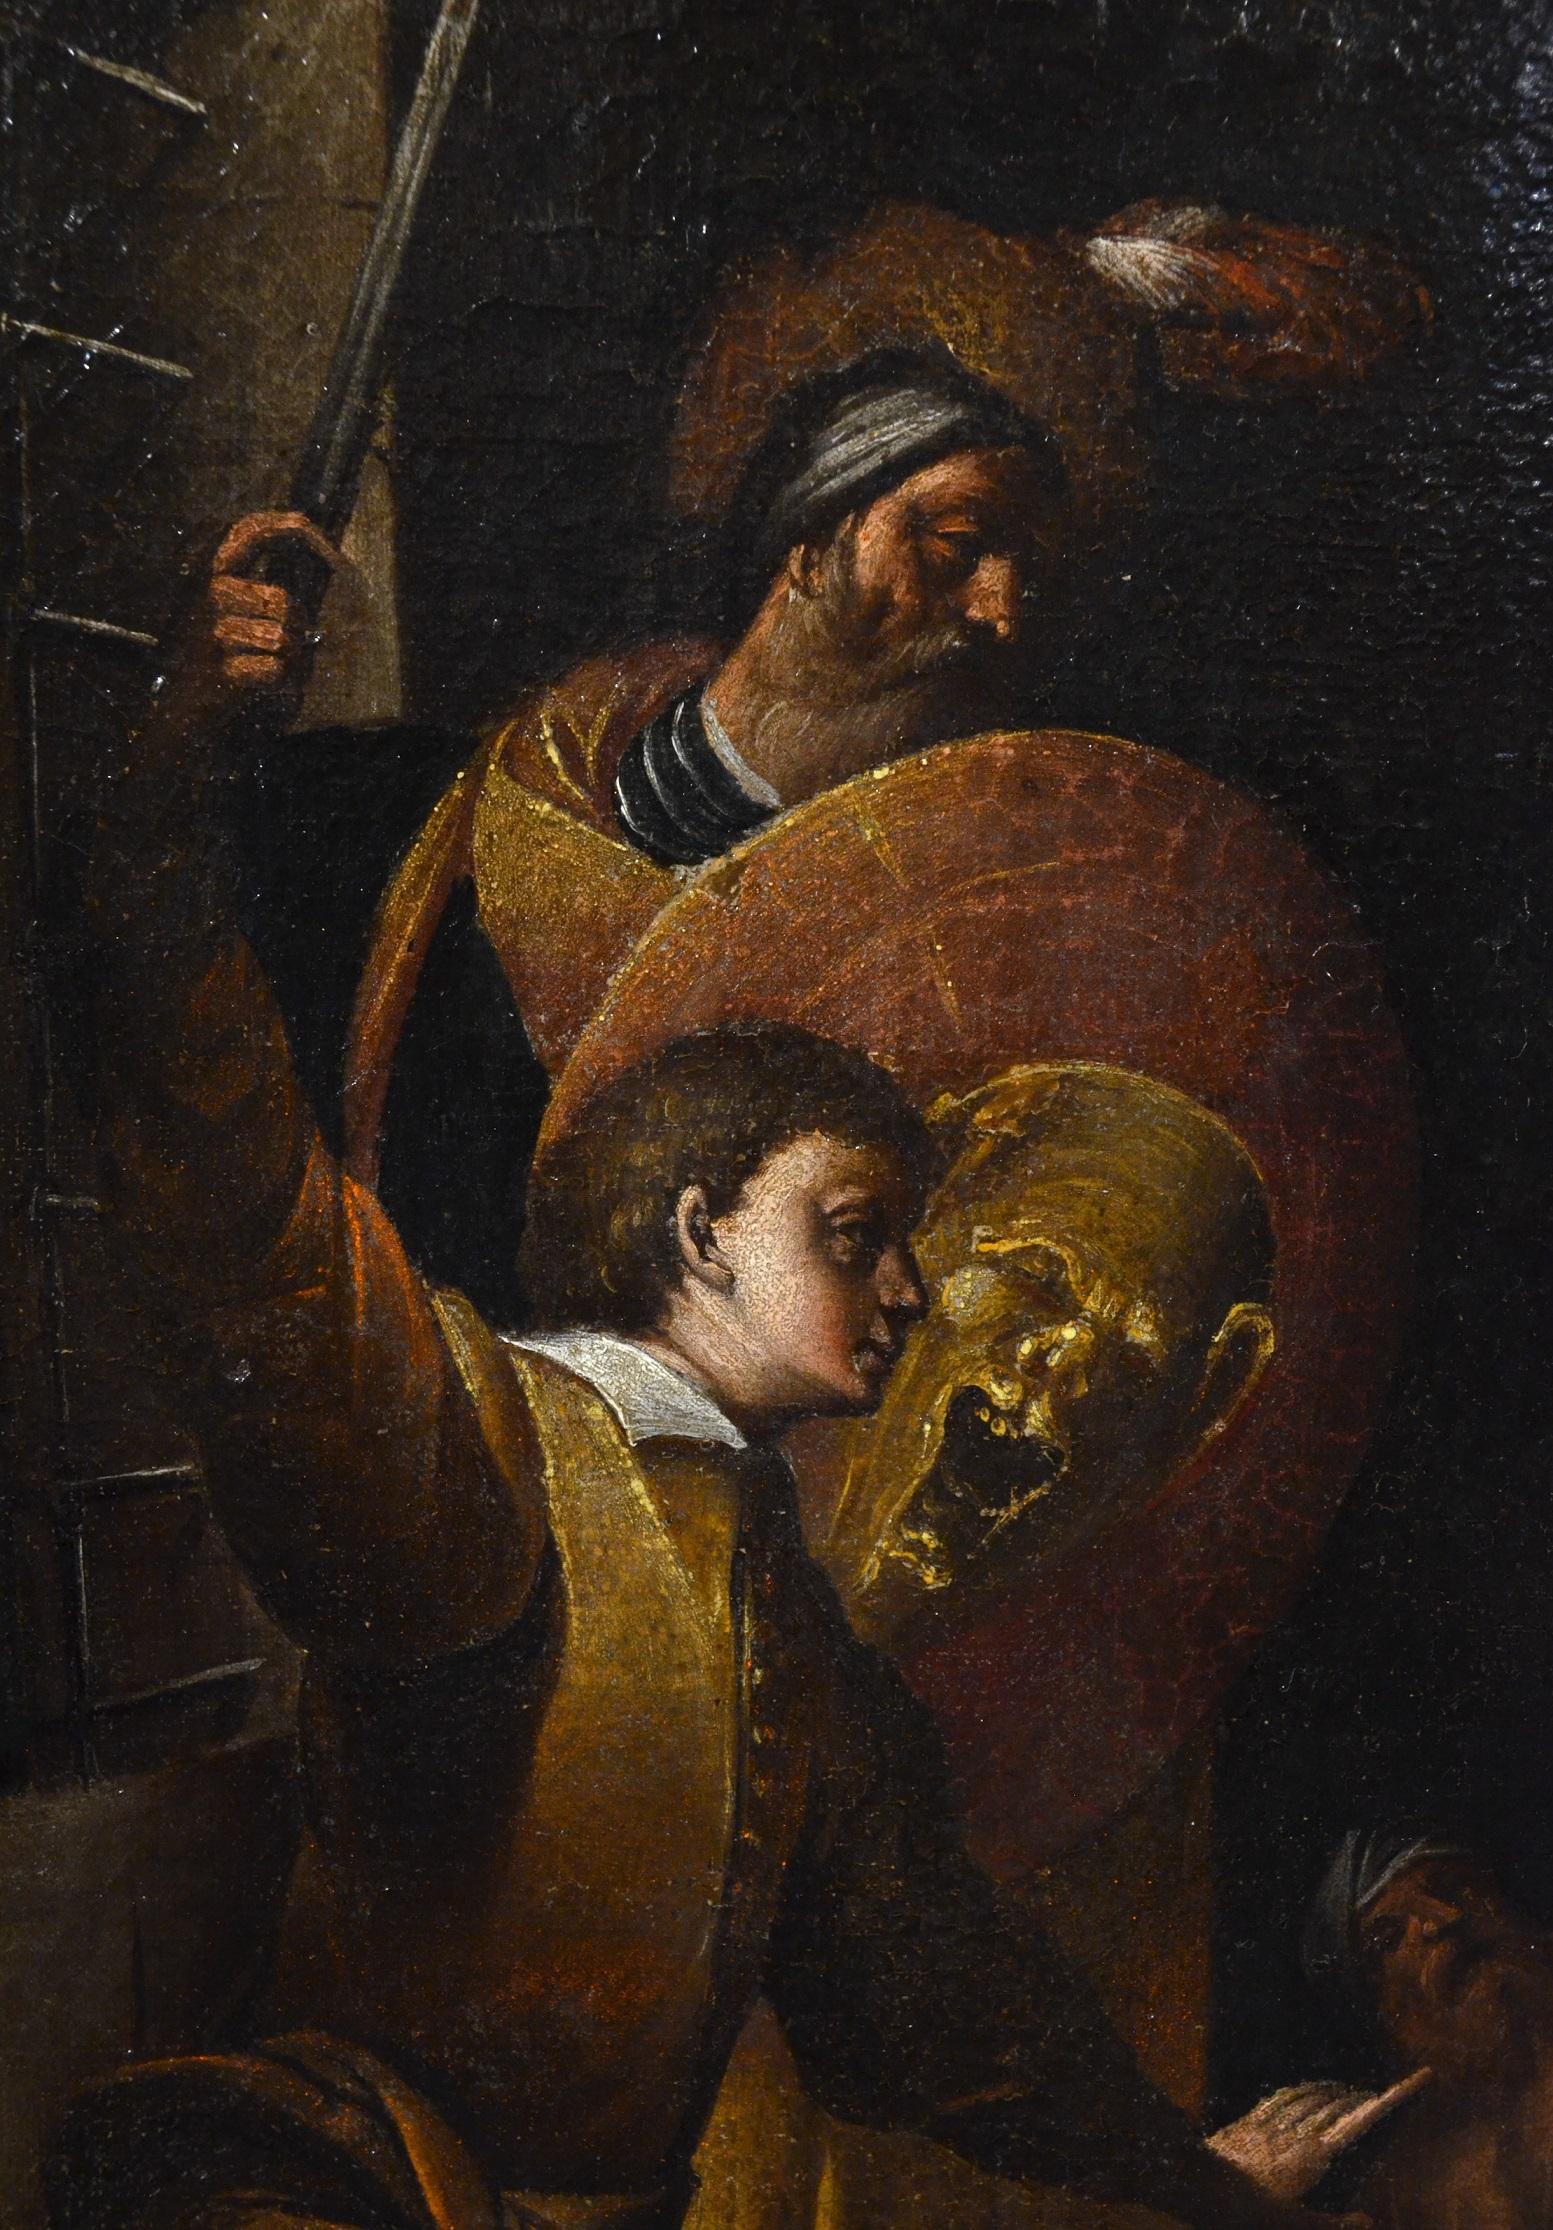 Saint John Baptist Morazzone Paint Oil on canvas Old master 17th Century Italy 9